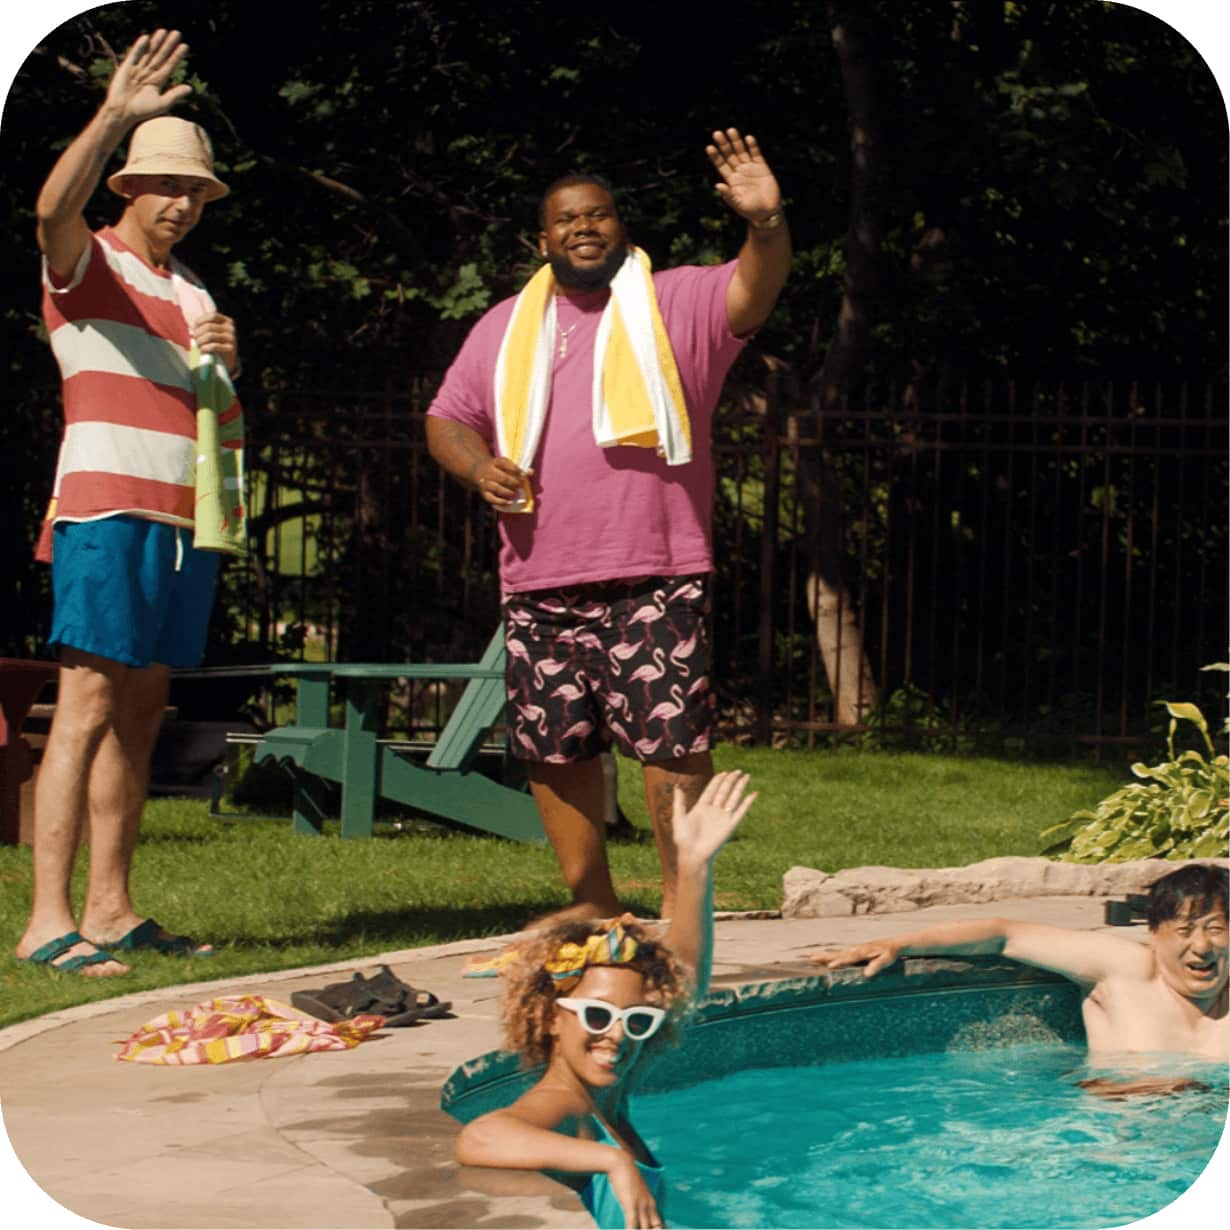 People in a backyard swimming pool